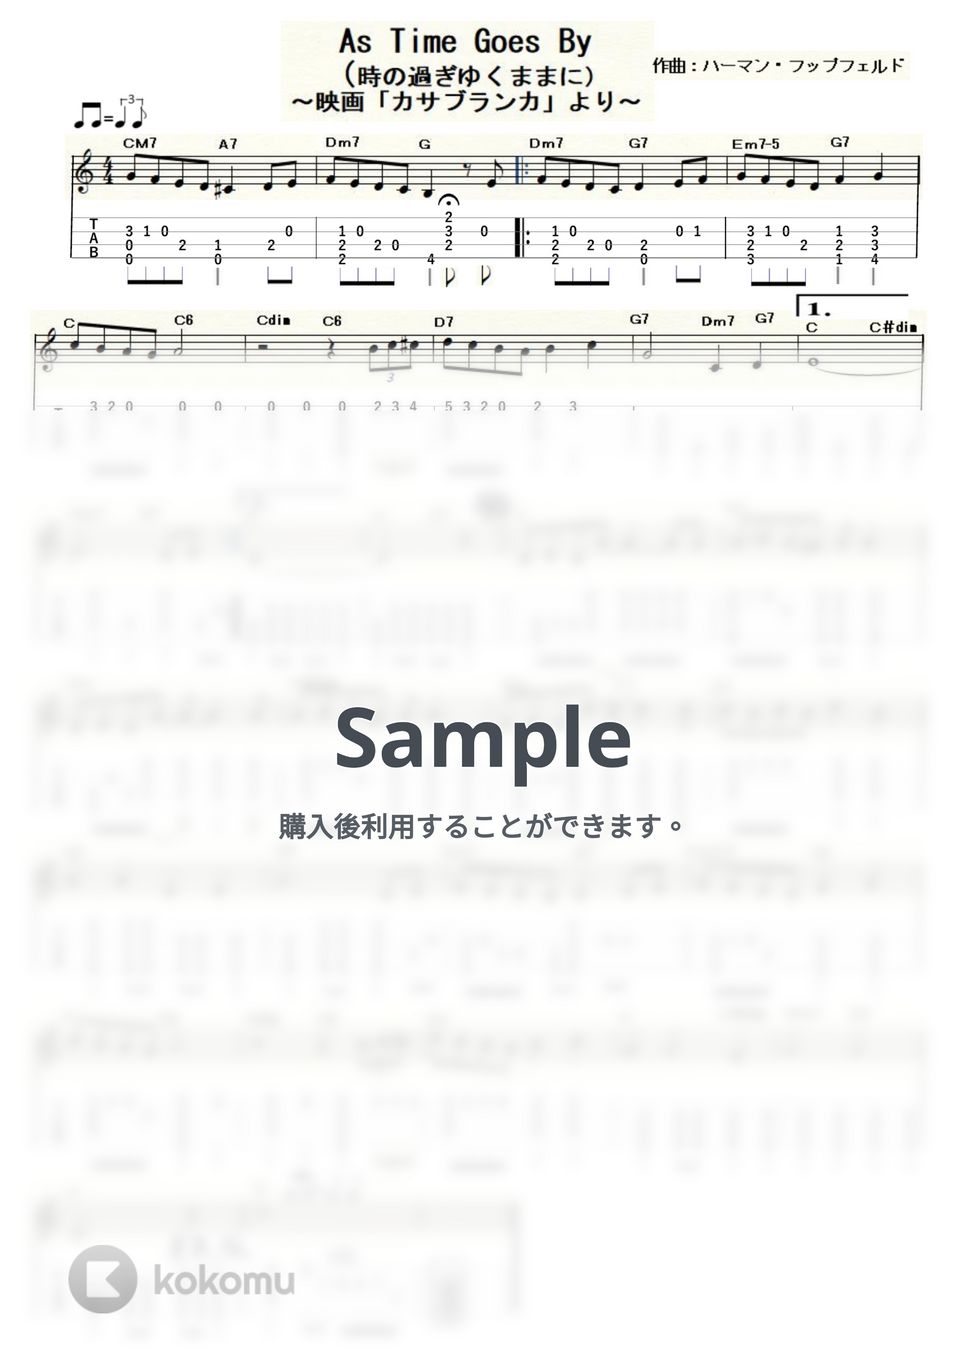 カサブランカ - As Time Goes By (ｳｸﾚﾚｿﾛ / Low-G / 中級) by ukulelepapa